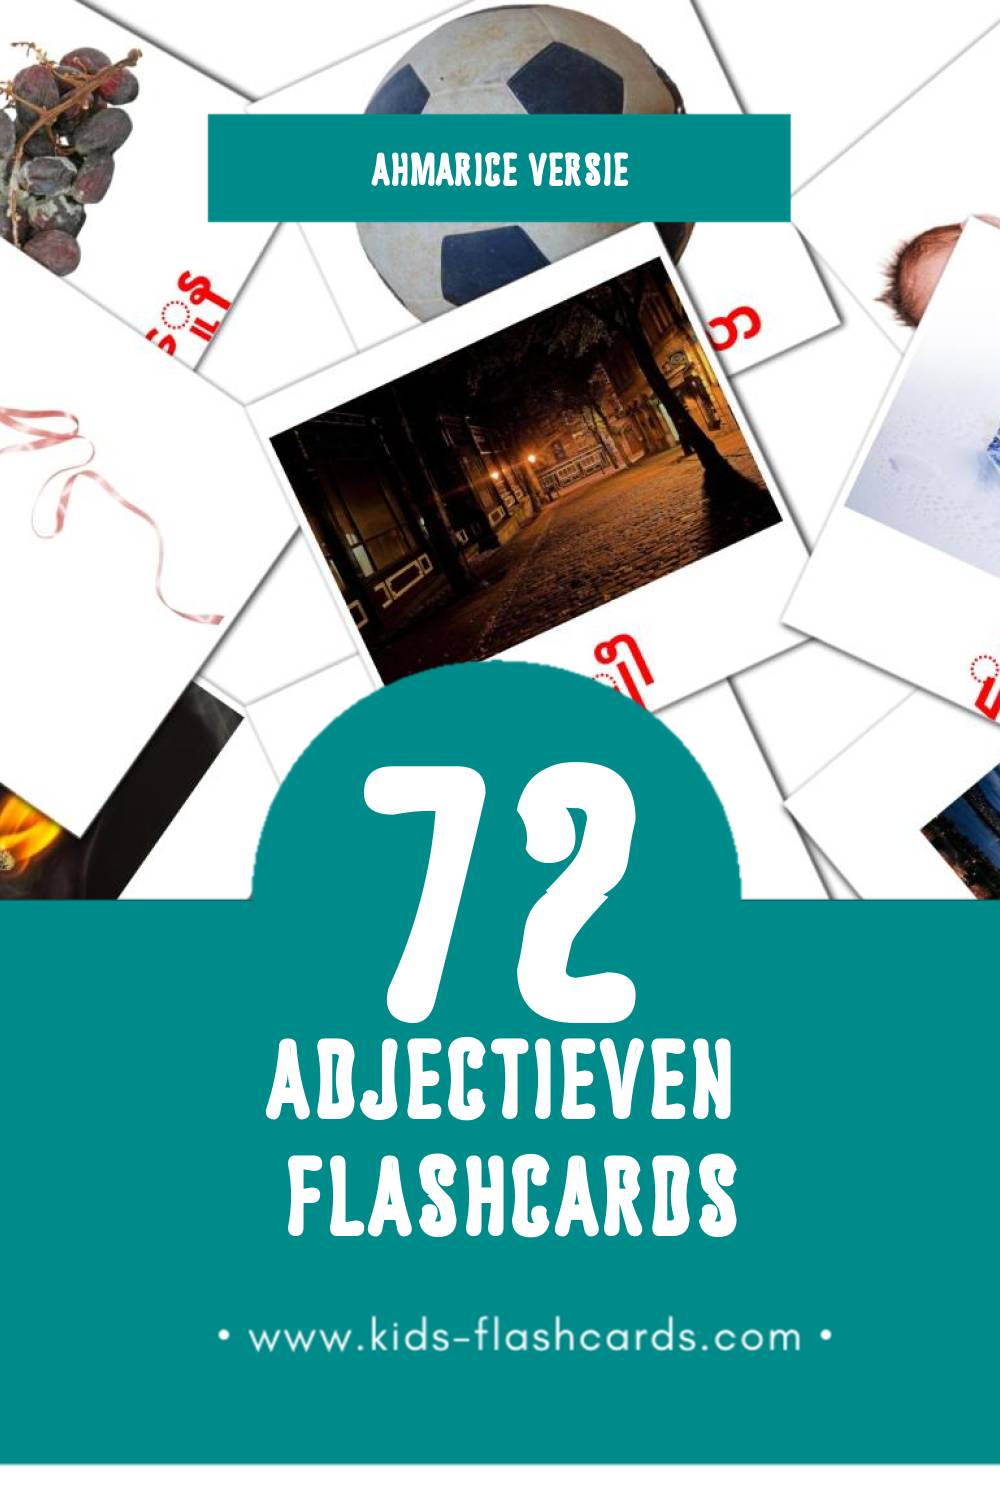 Visuele things Flashcards voor Kleuters (72 kaarten in het Ahmaric)